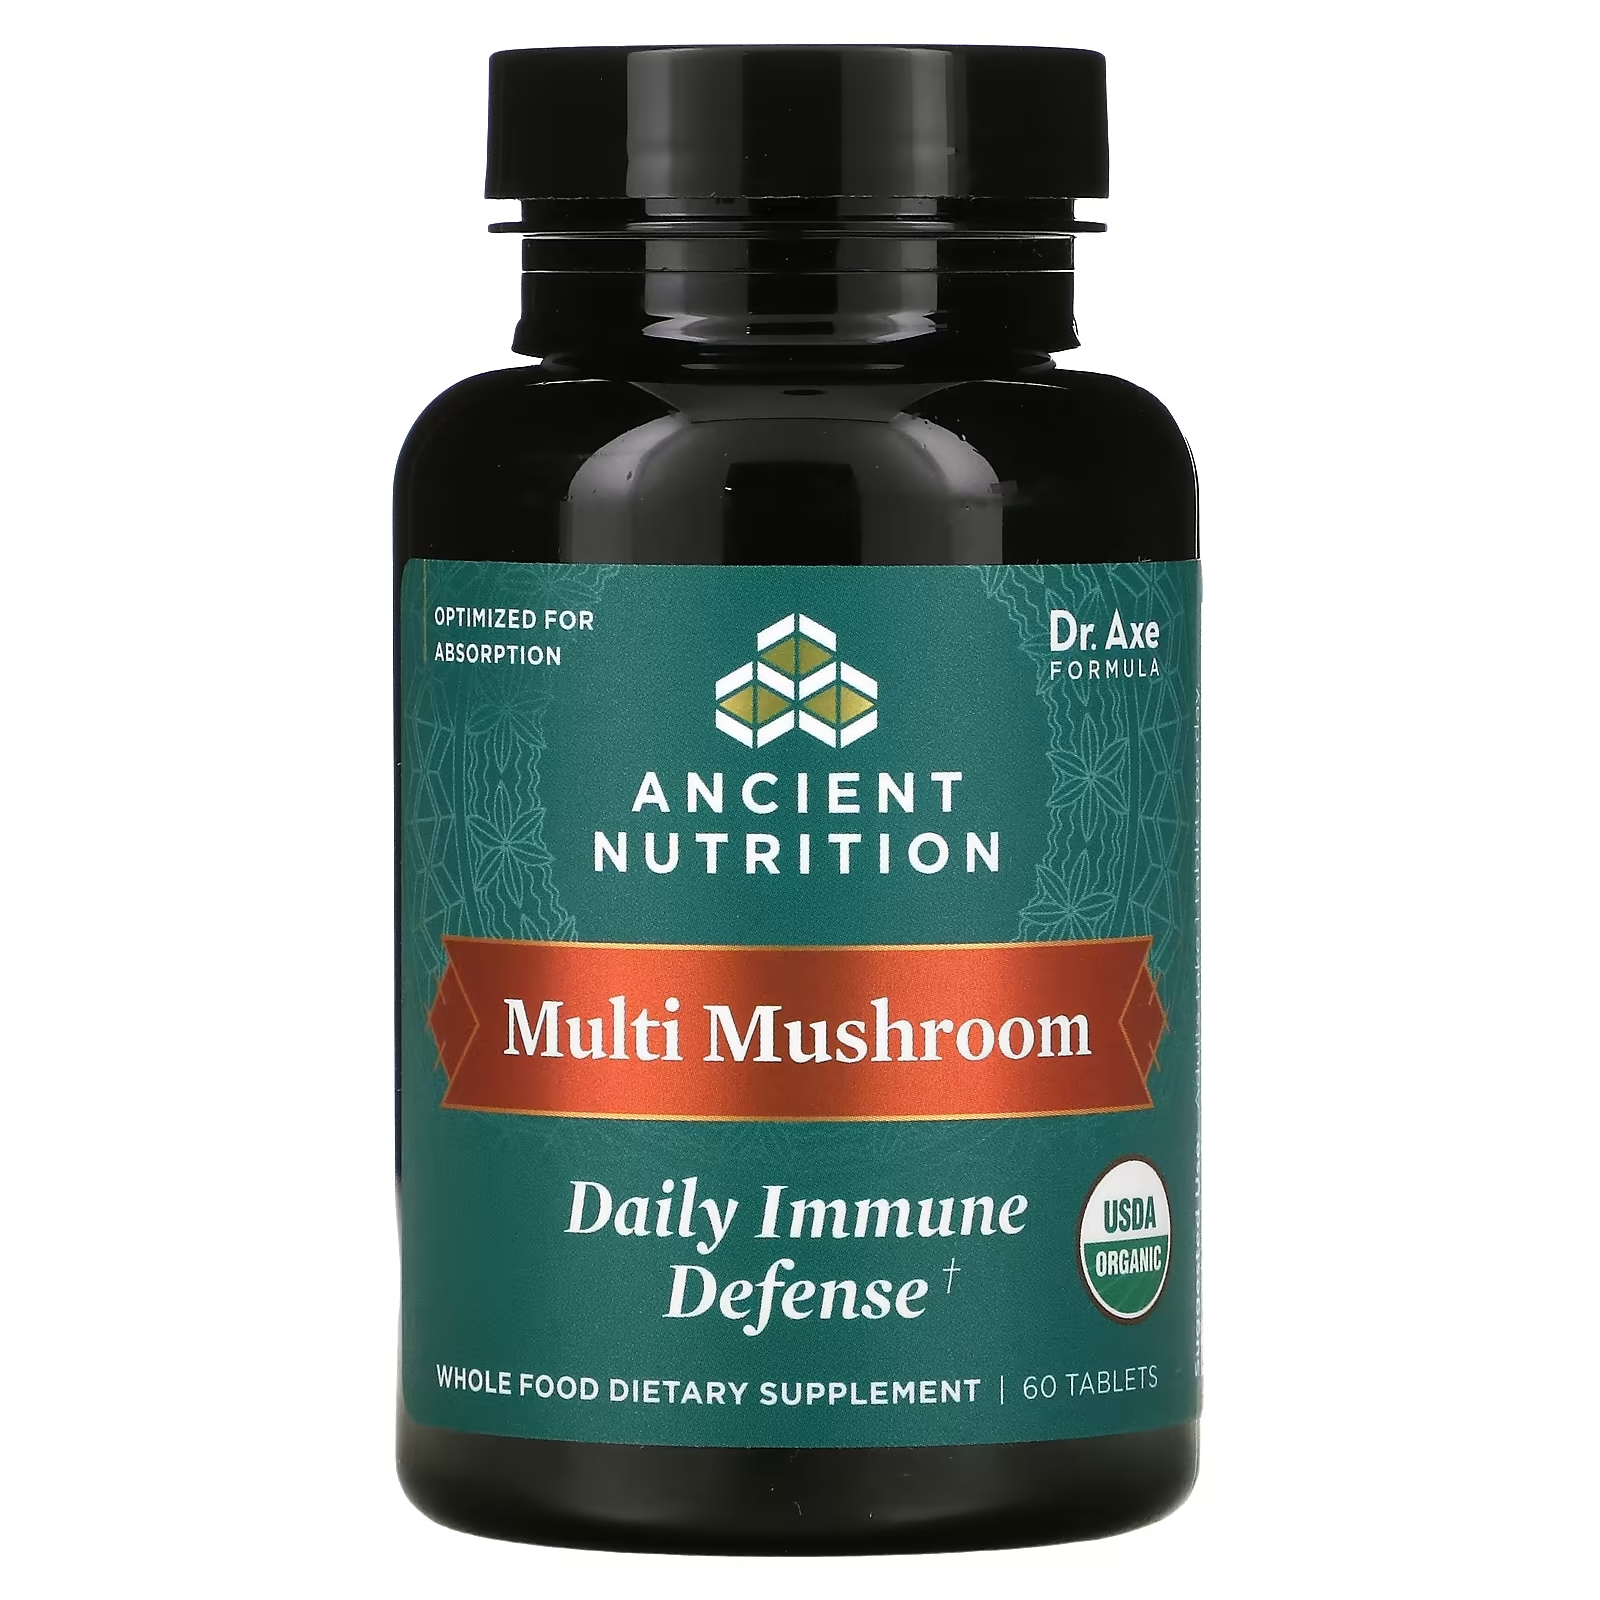 Dr. Axe Ancient Nutrition Multi Mushroom ежедневная защита иммунитета, 60 таблеток пищевая добавка dr axe ancient nutrition ежедневная защита иммунитета 60 таблеток